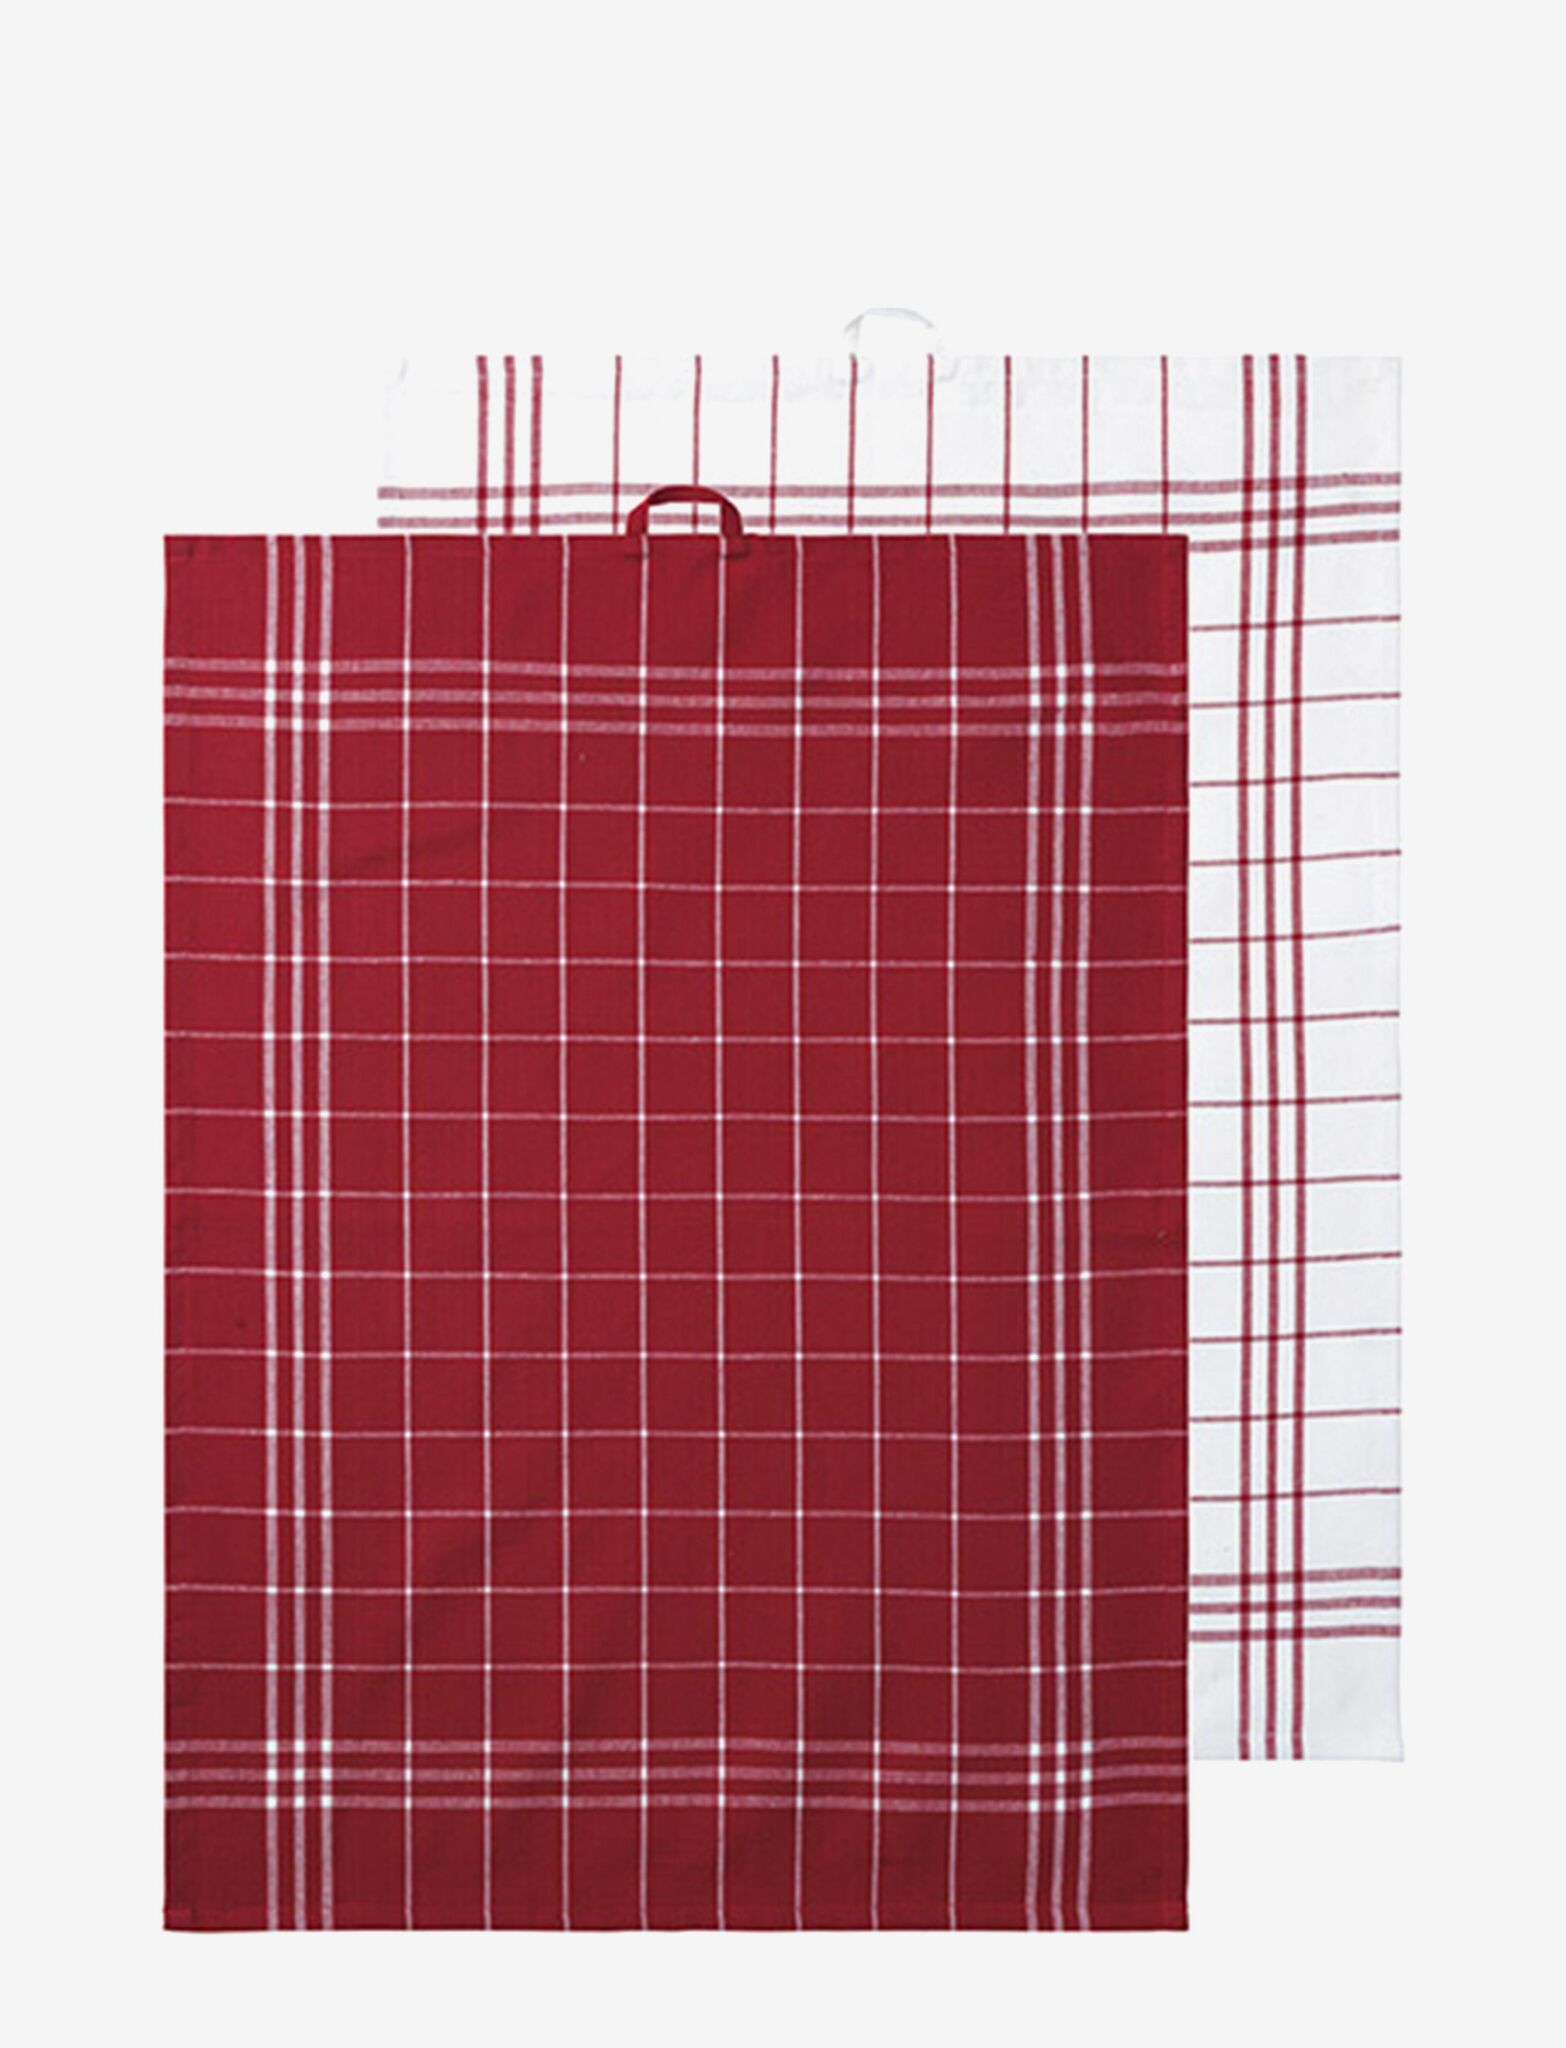 Hanna classic ett 2 pack rödvitrutiga kökshanddukar i bomull från Noble house, mått 2 x 50 x 70 cm.